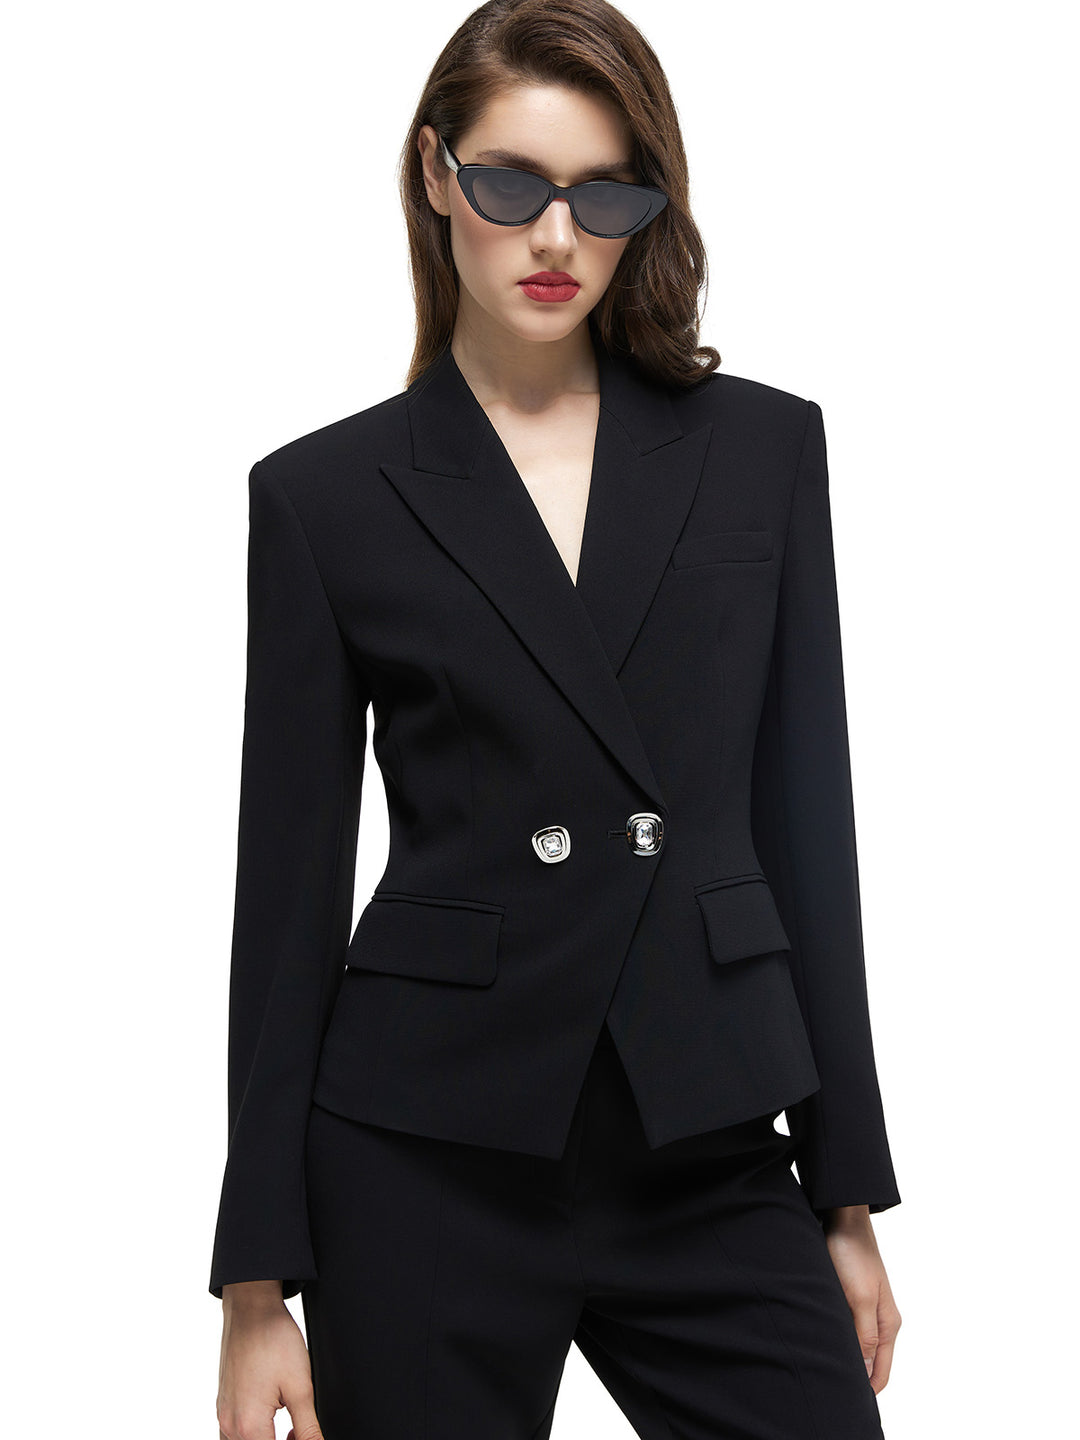 Textured Acetate S-shape Suit Jacket